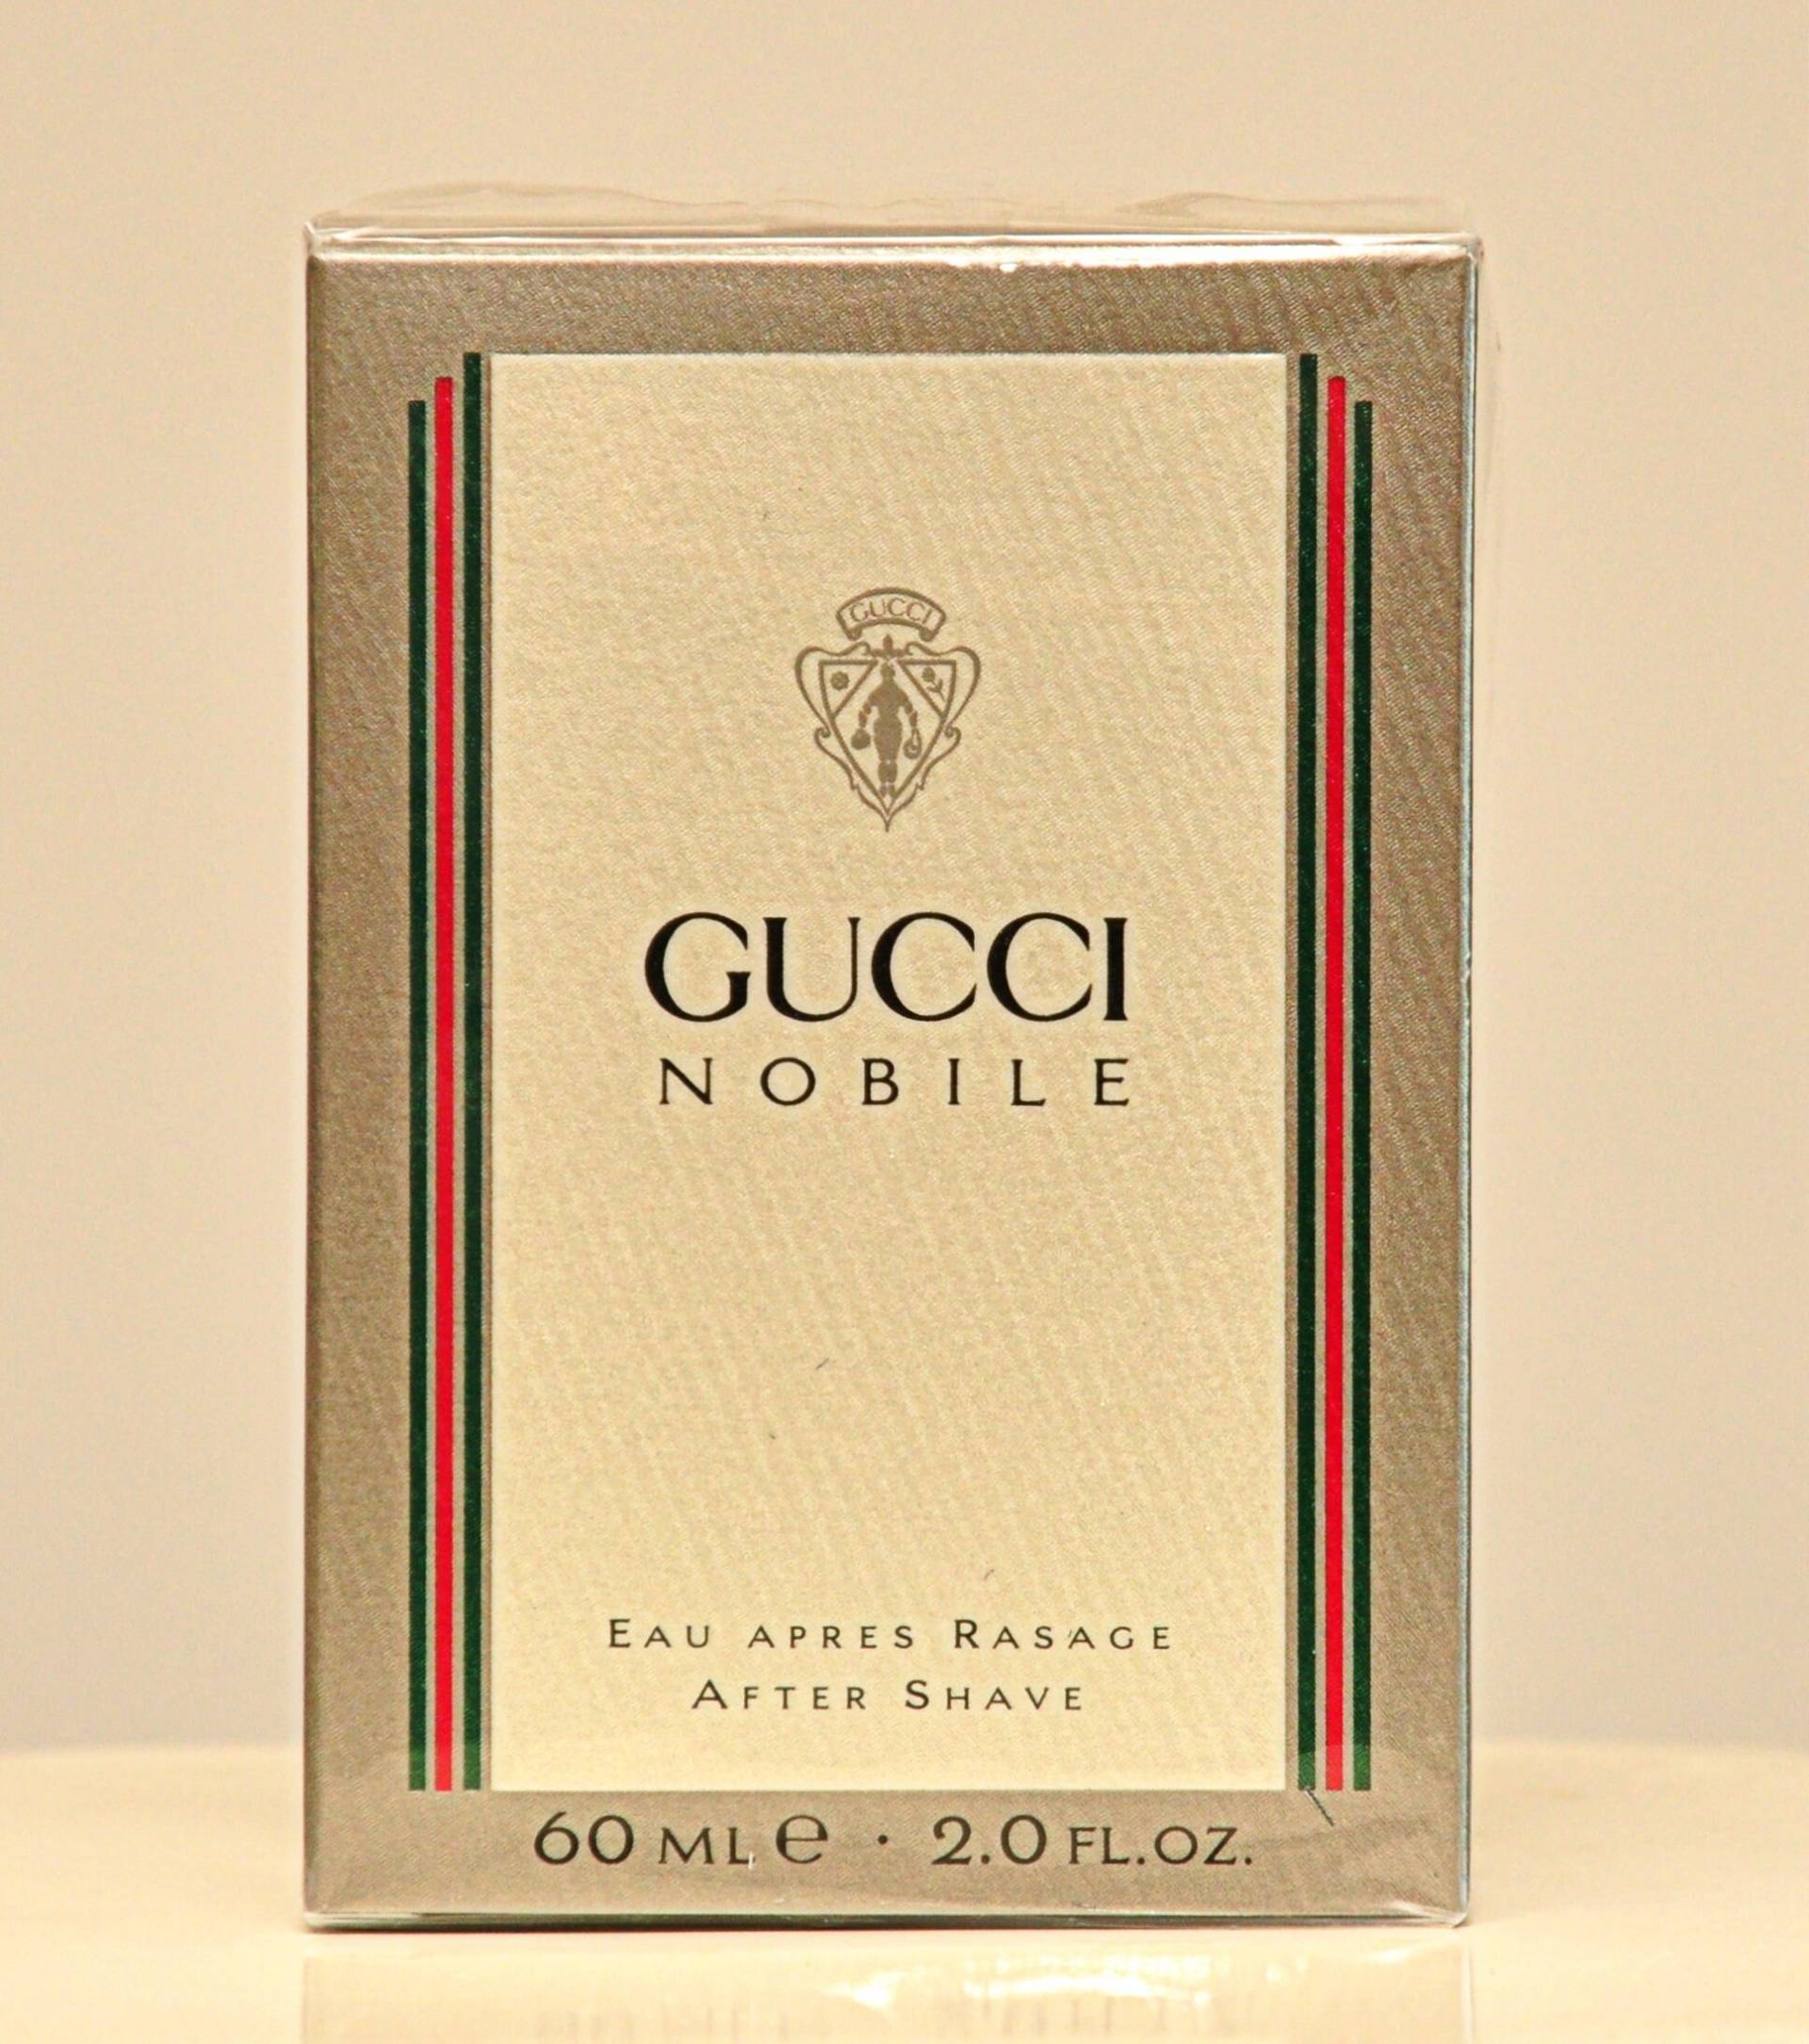 Gucci Nobile Eau Apres Rasage 60Ml Splash Non Spray Parfüm Mann Sehr Seltener Jahrgang 1988 Neu Versiegelt von YourVintagePerfume